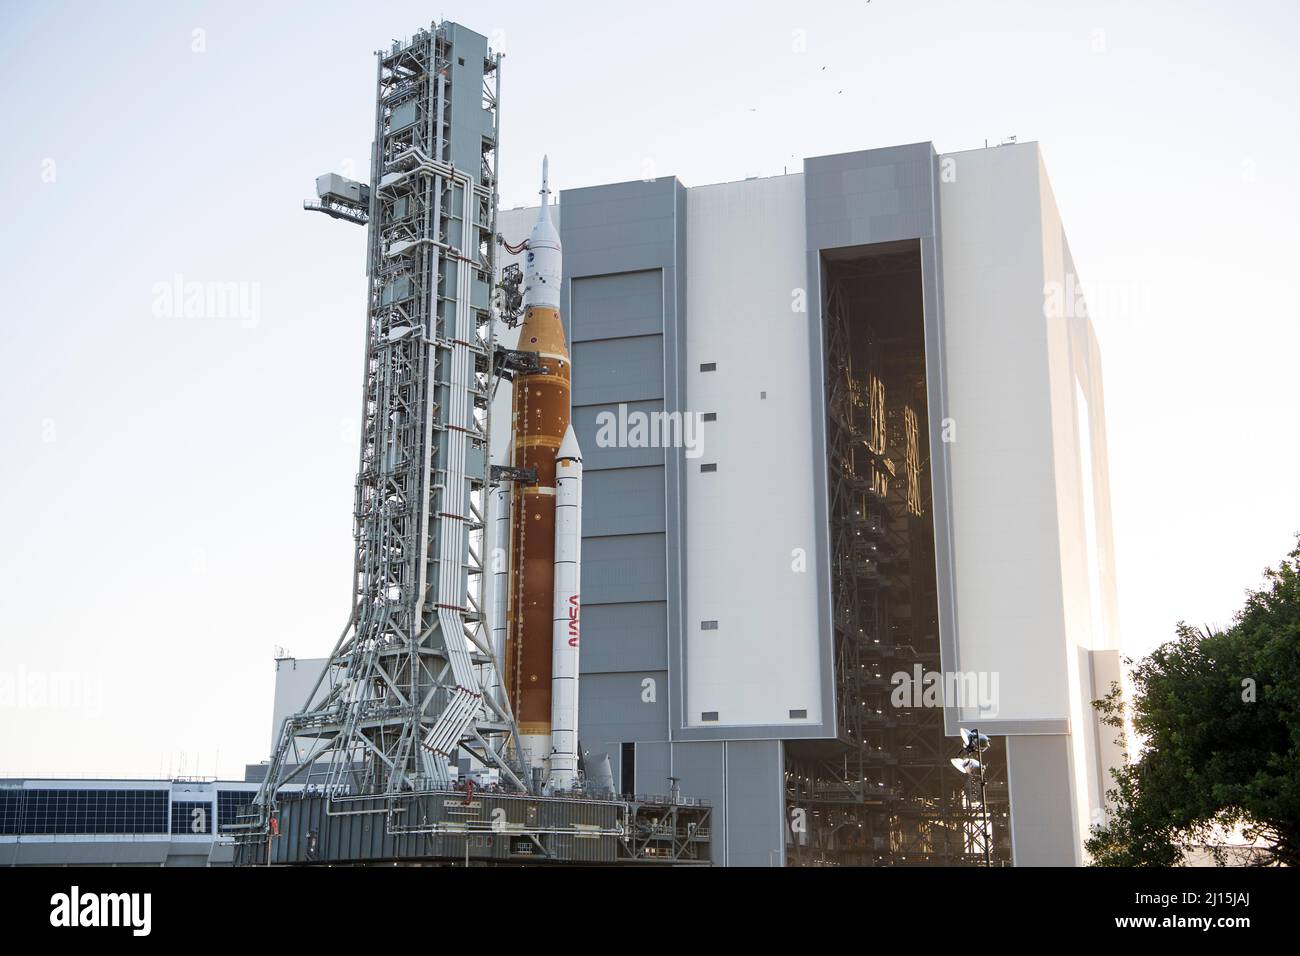 La fusée SLS (Space Launch System) de la NASA à bord de l'engin spatial Orion est vue au sommet d'un lanceur mobile alors qu'elle sort de High Bay 3 du bâtiment d'assemblage de véhicules pour la première fois pour lancer le complexe 39B, le jeudi 17 mars 2022, au Kennedy Space Center de la NASA en Floride. Avant l'essai en vol Artemis I de la NASA, la fusée SLS et l'engin spatial Orion entièrement empilés et intégrés feront l'objet d'une répétition en robe humide au Launch Complex 39B pour vérifier les systèmes et pratiquer les procédures de compte à rebours pour le premier lancement. Crédit photo : (NASA/Aubrey Gemignani) Banque D'Images